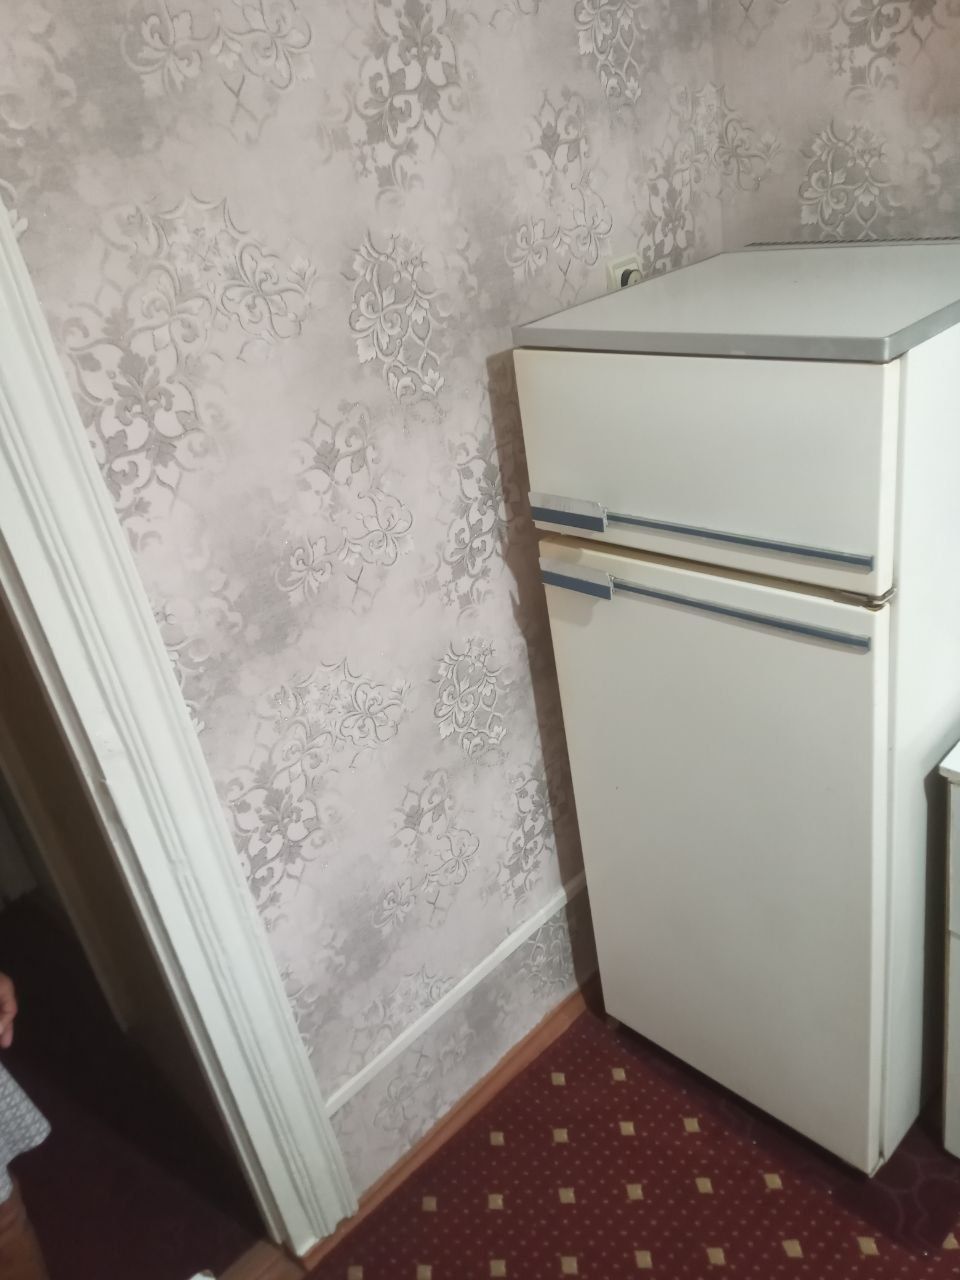 Срочно продается холодильник!! Производства Россия